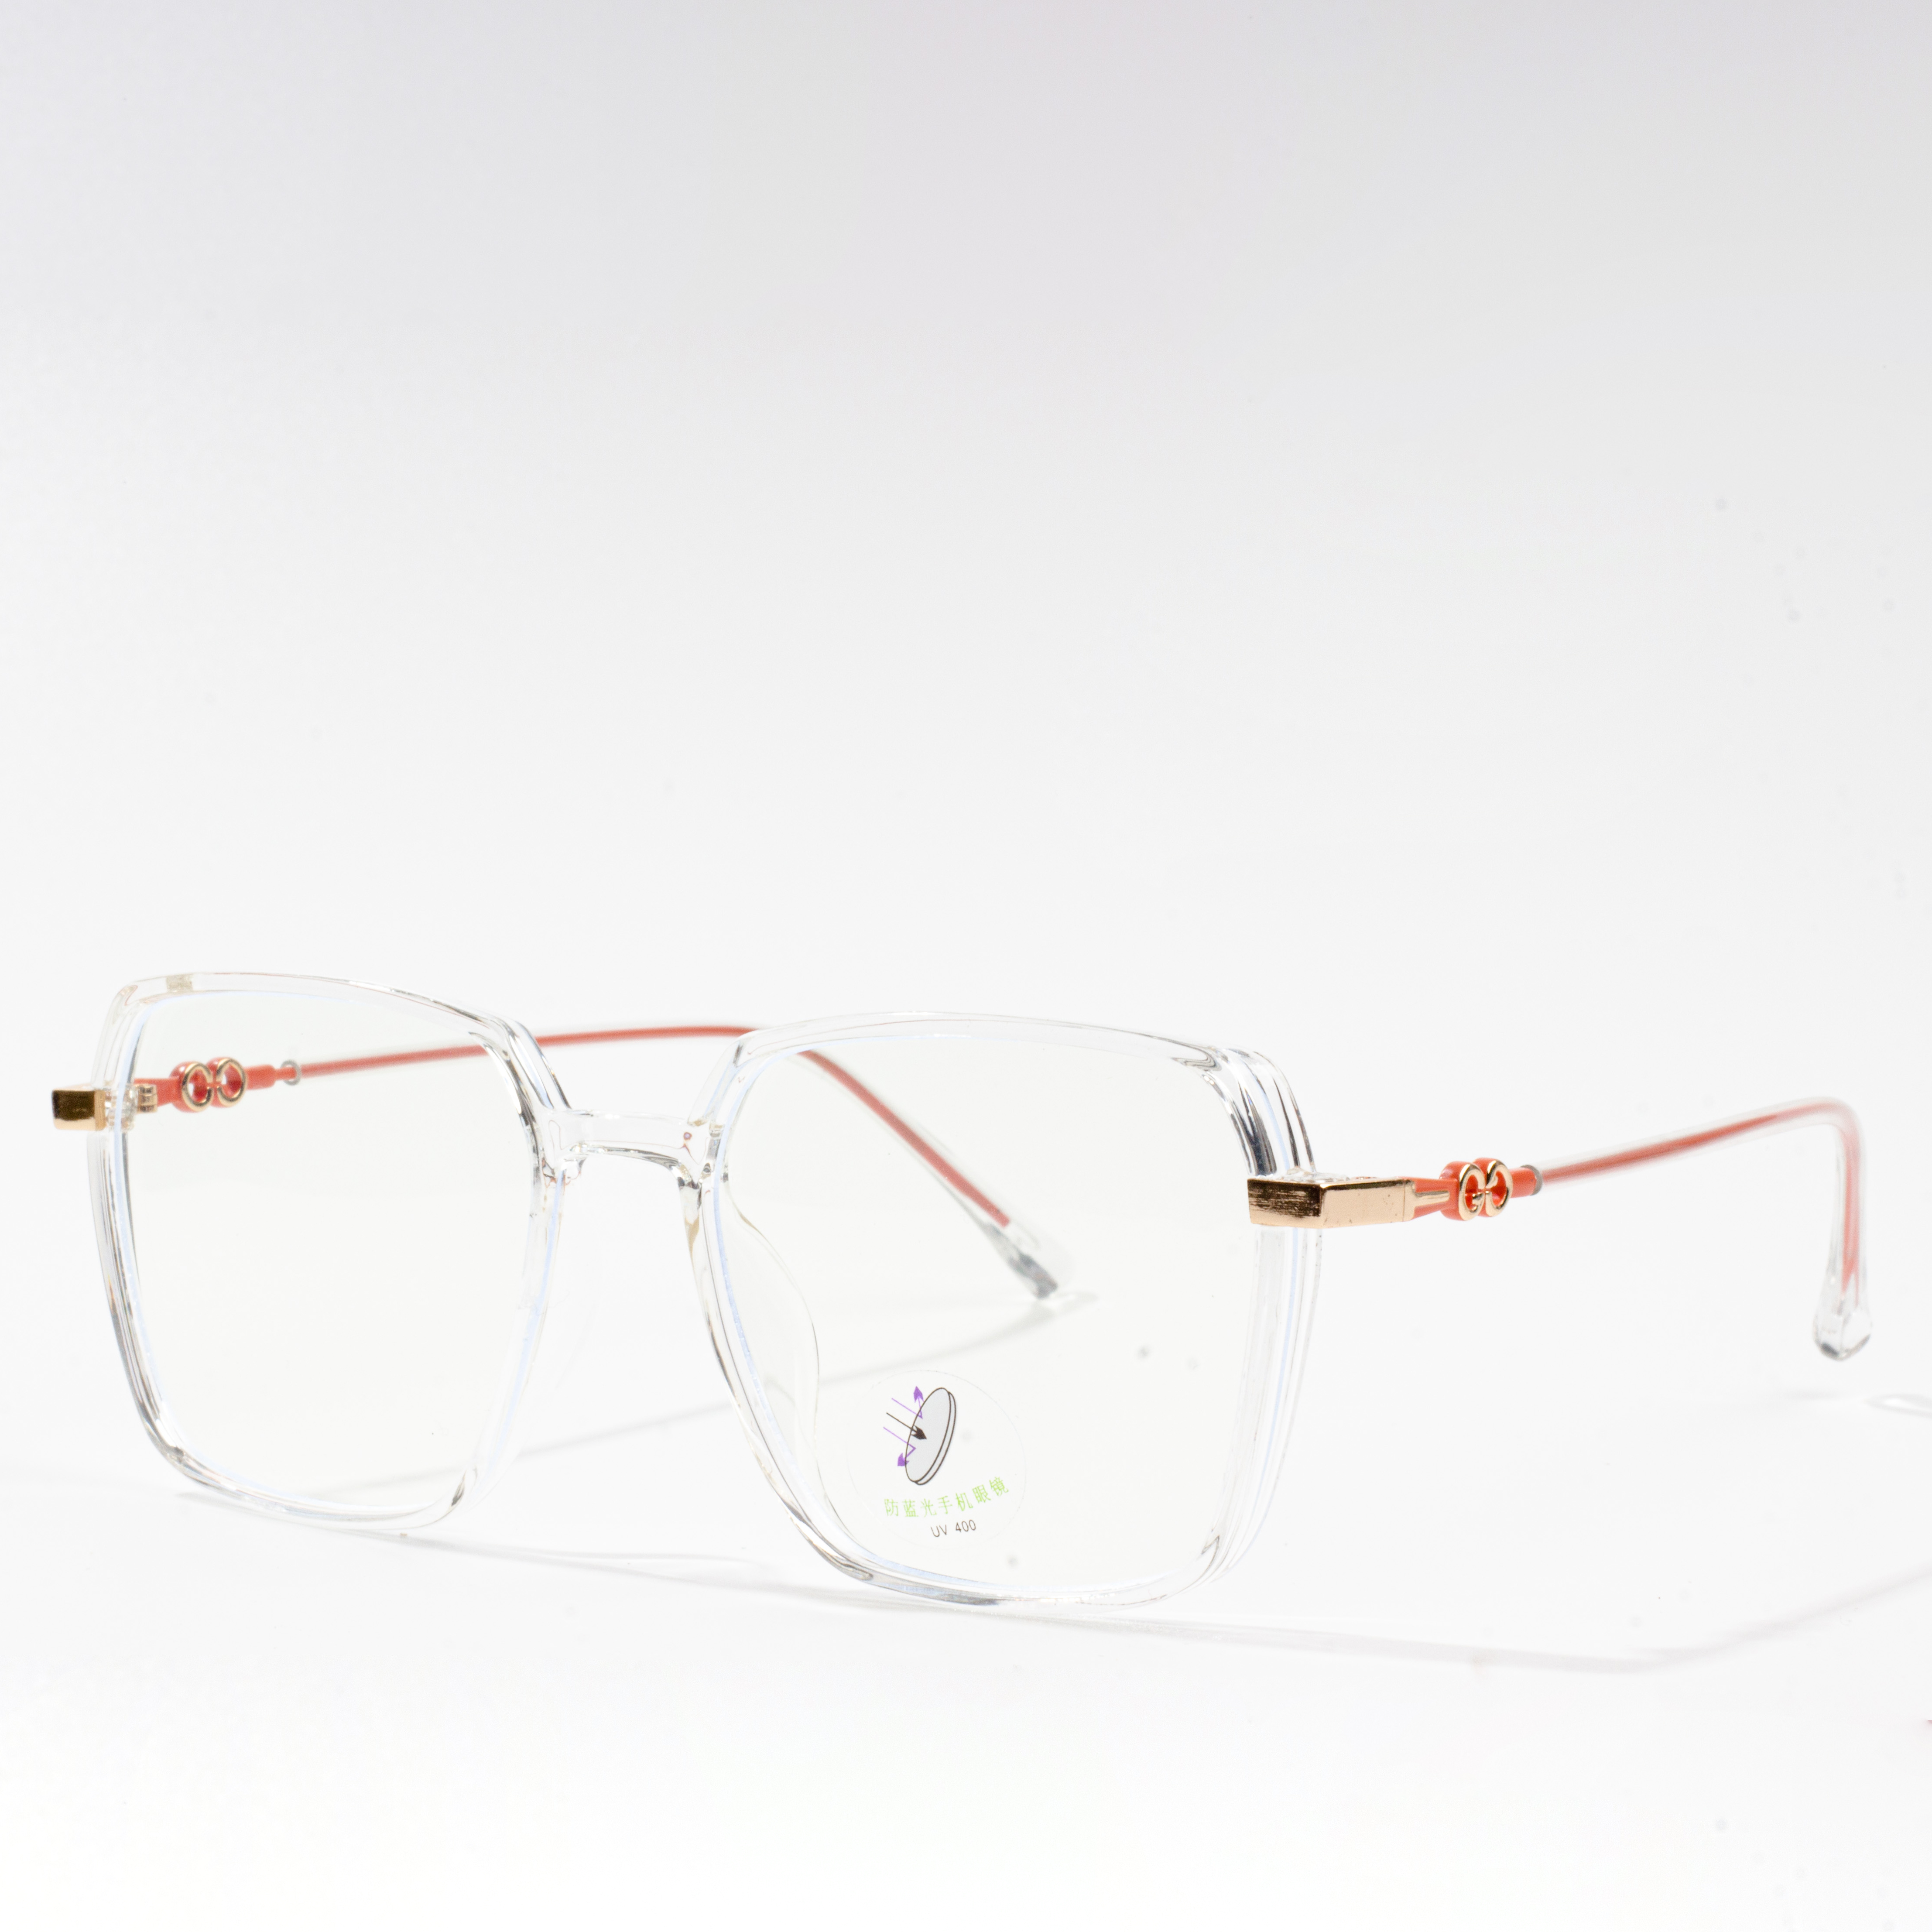 kvadratiniai akinių rėmeliai